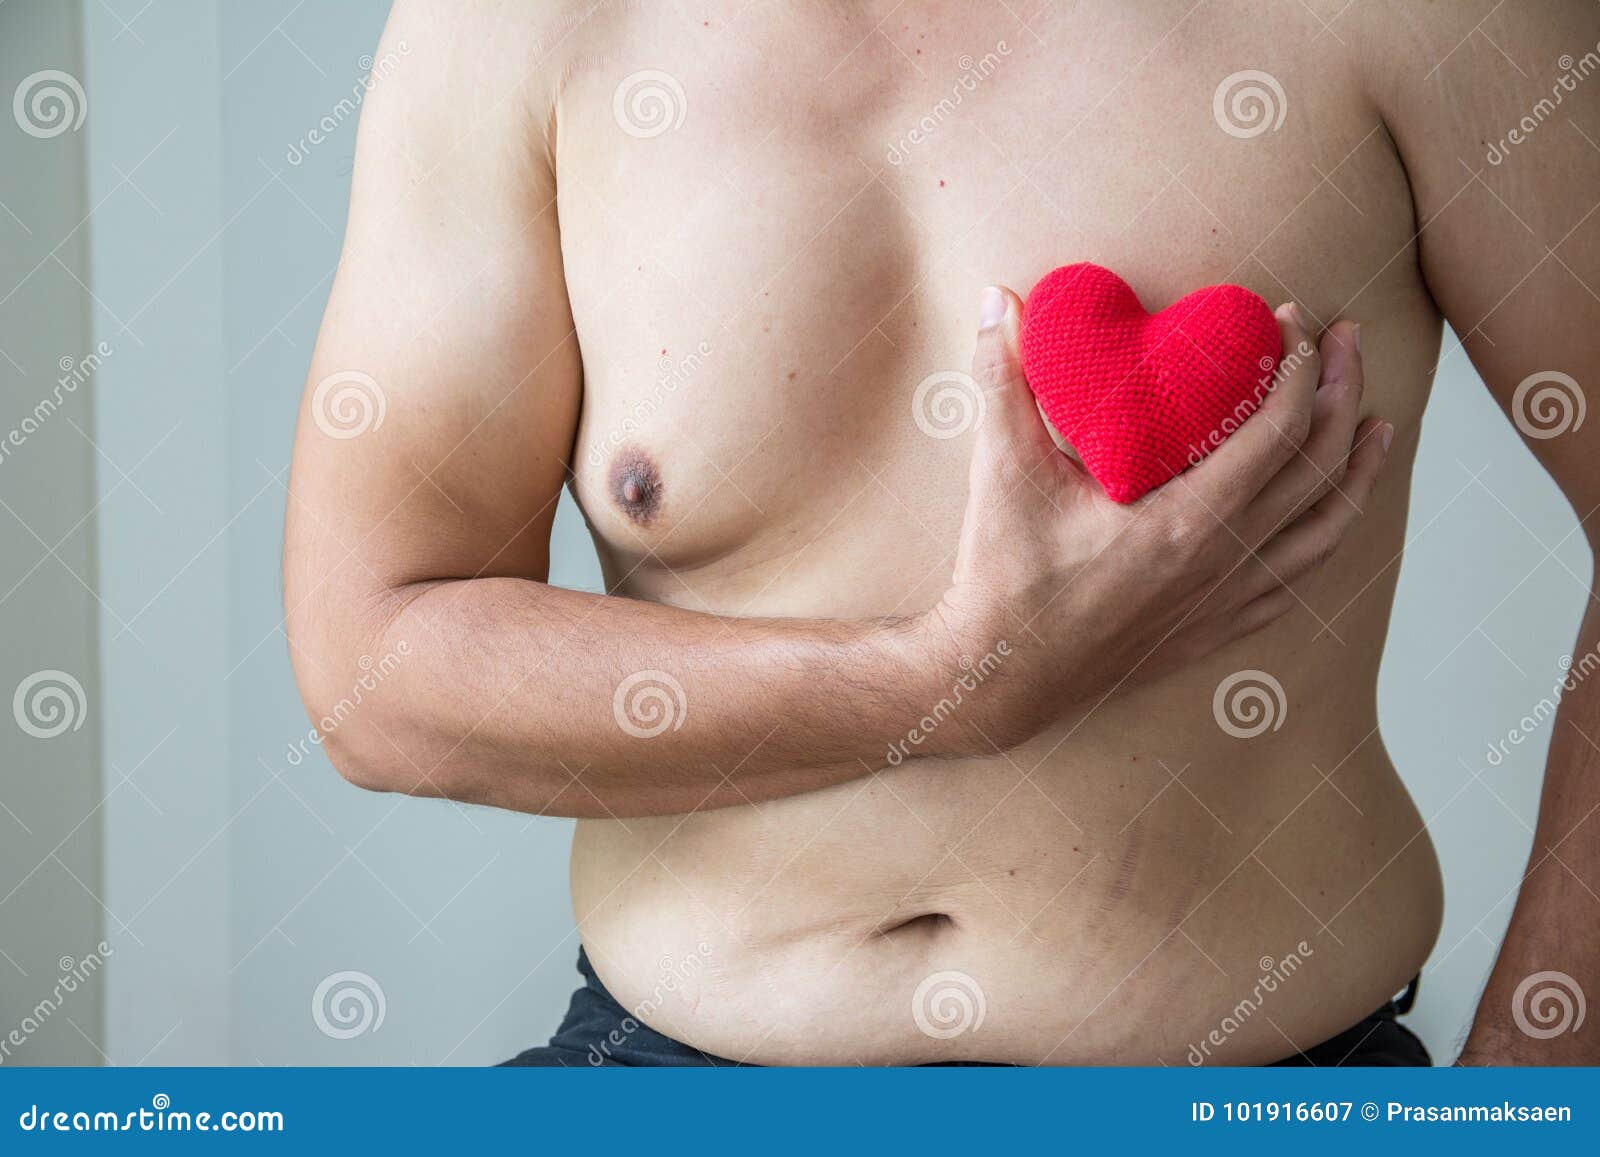 фото мужик с грудями женскими фото 113